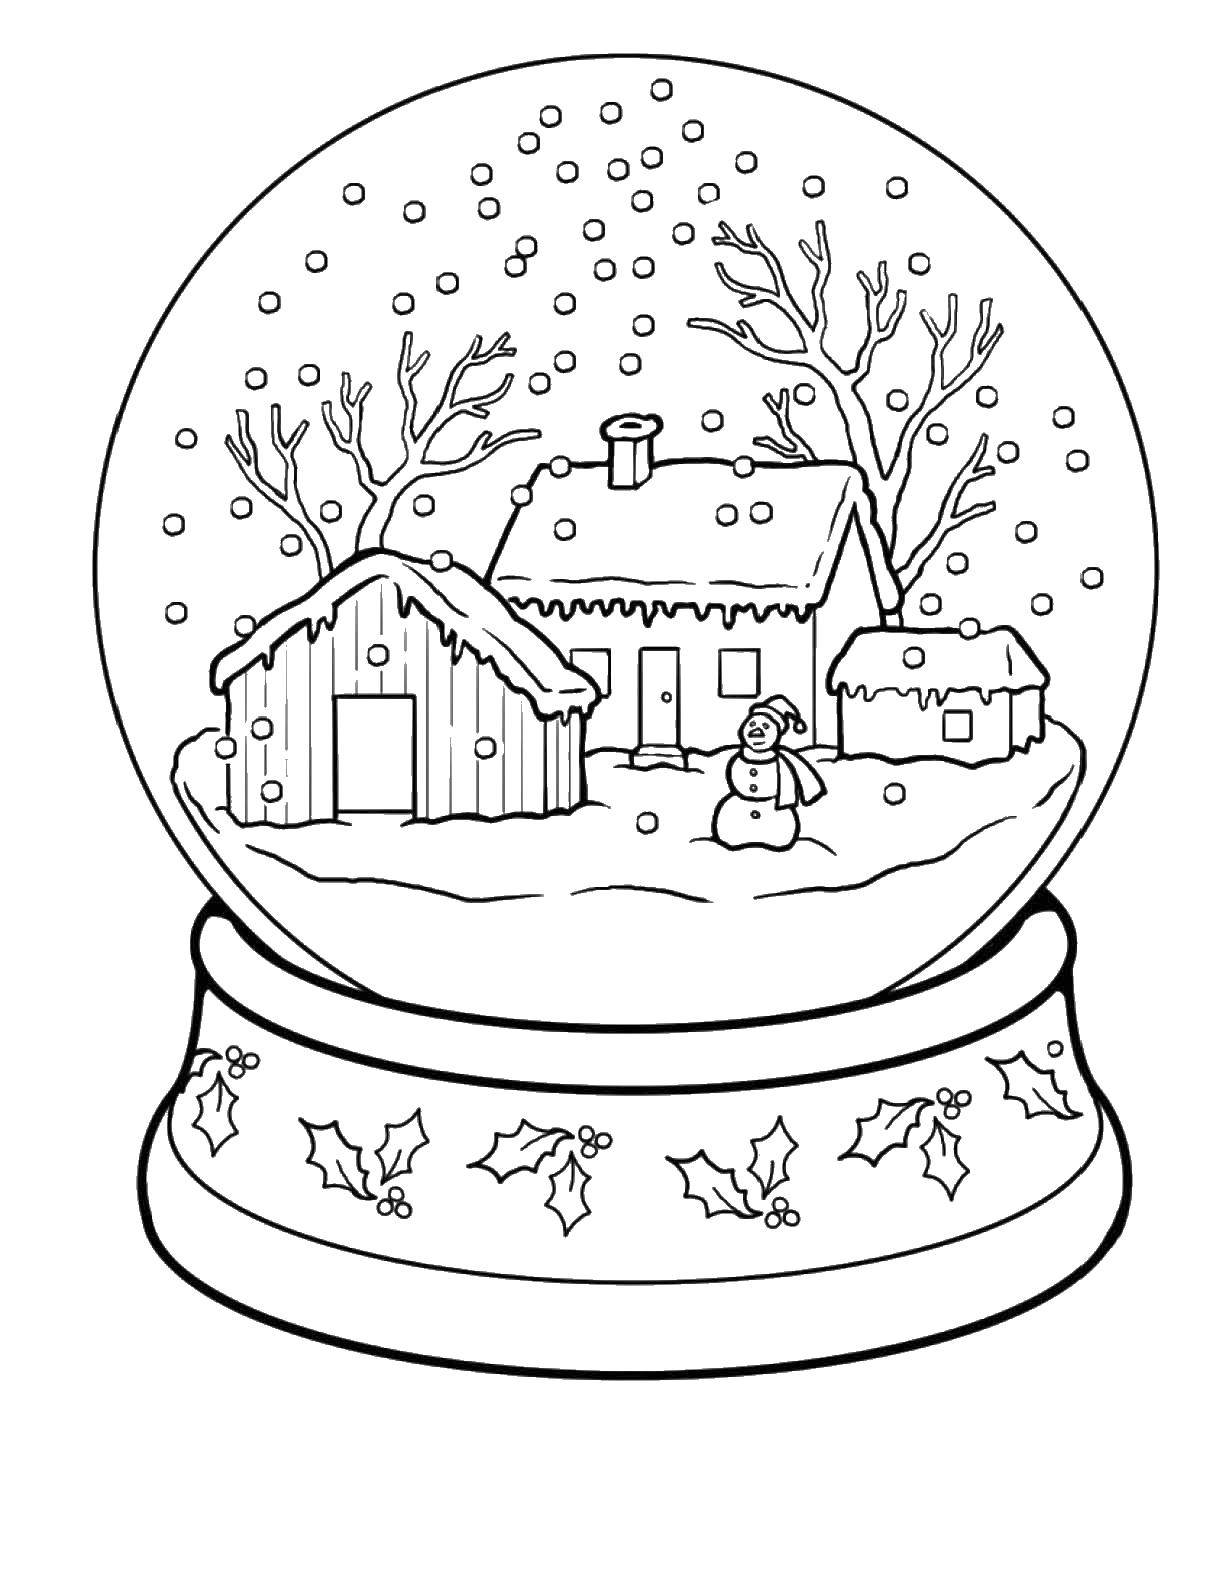 Раскраски для детей Зима, зимушка раскраски для школьников  Шарик с домиками внутри